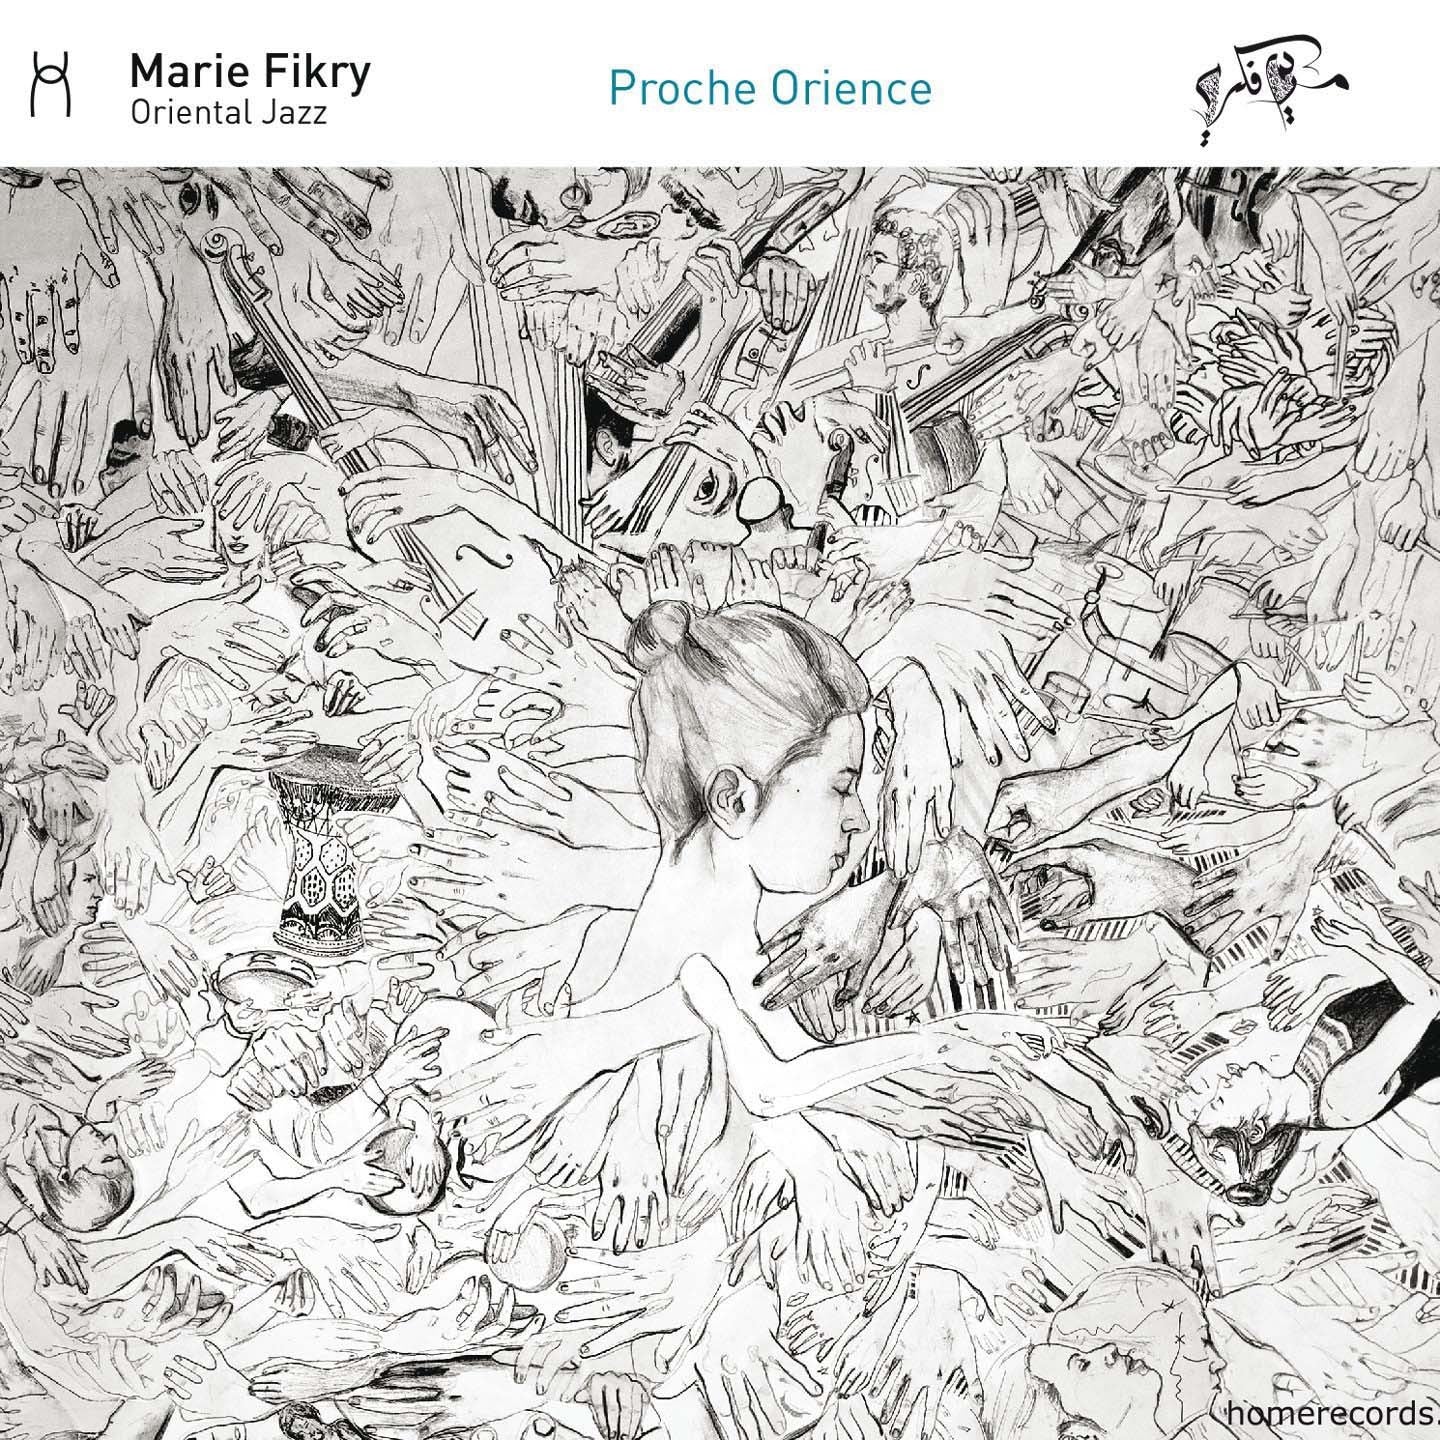 Pochette de : PROCHE ORIENCE - MARIE FIKRY (CD)